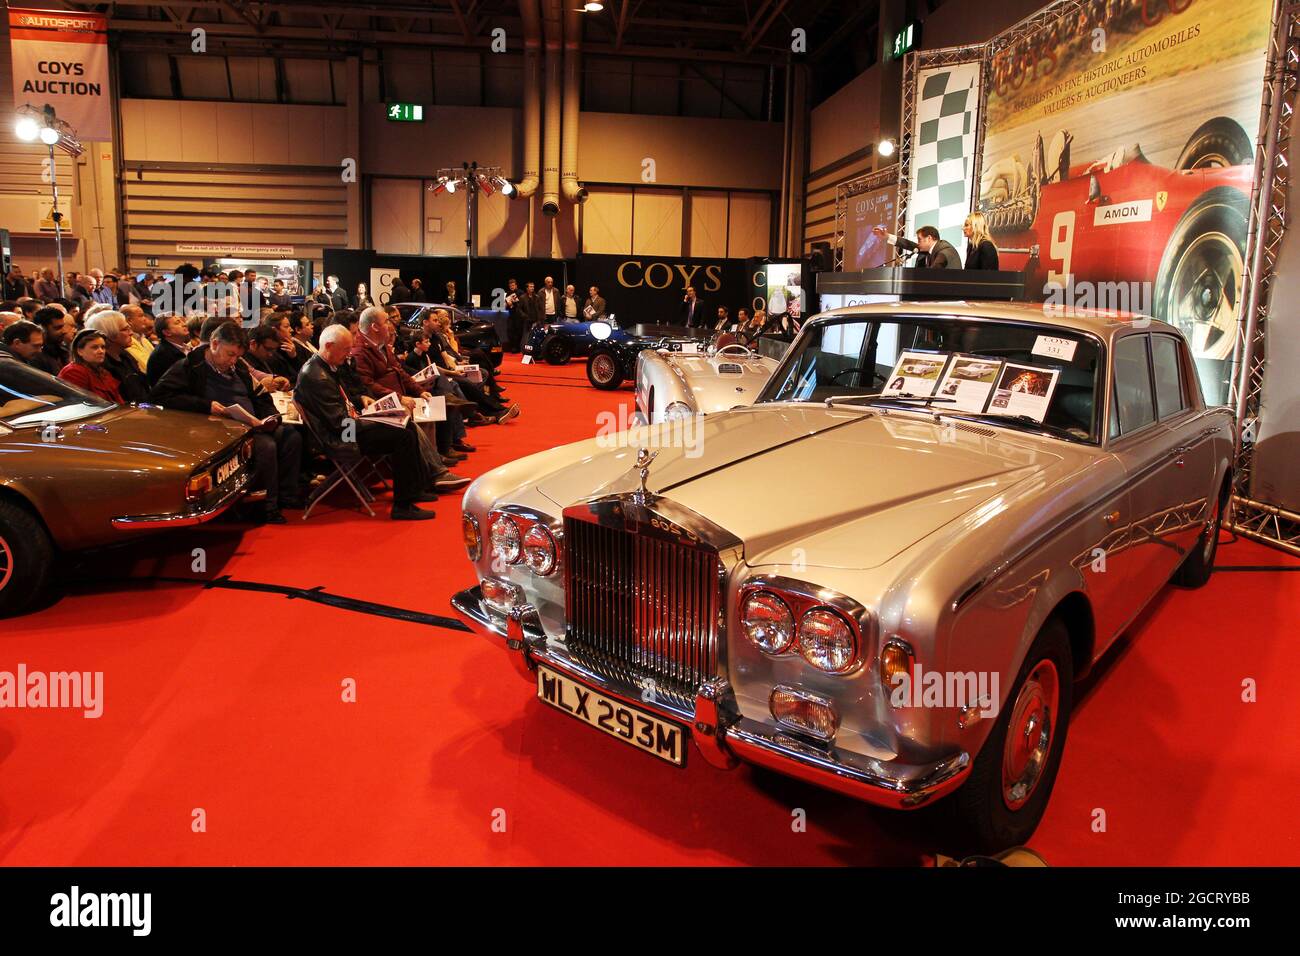 La Rolls Royce, propriété de Freddie Mercury (GBR), est vendue aux enchères de Coys à Autosport International. Autosport International, samedi 12 janvier 2013. National Exhibition Centre, Birmingham, Angleterre. Banque D'Images